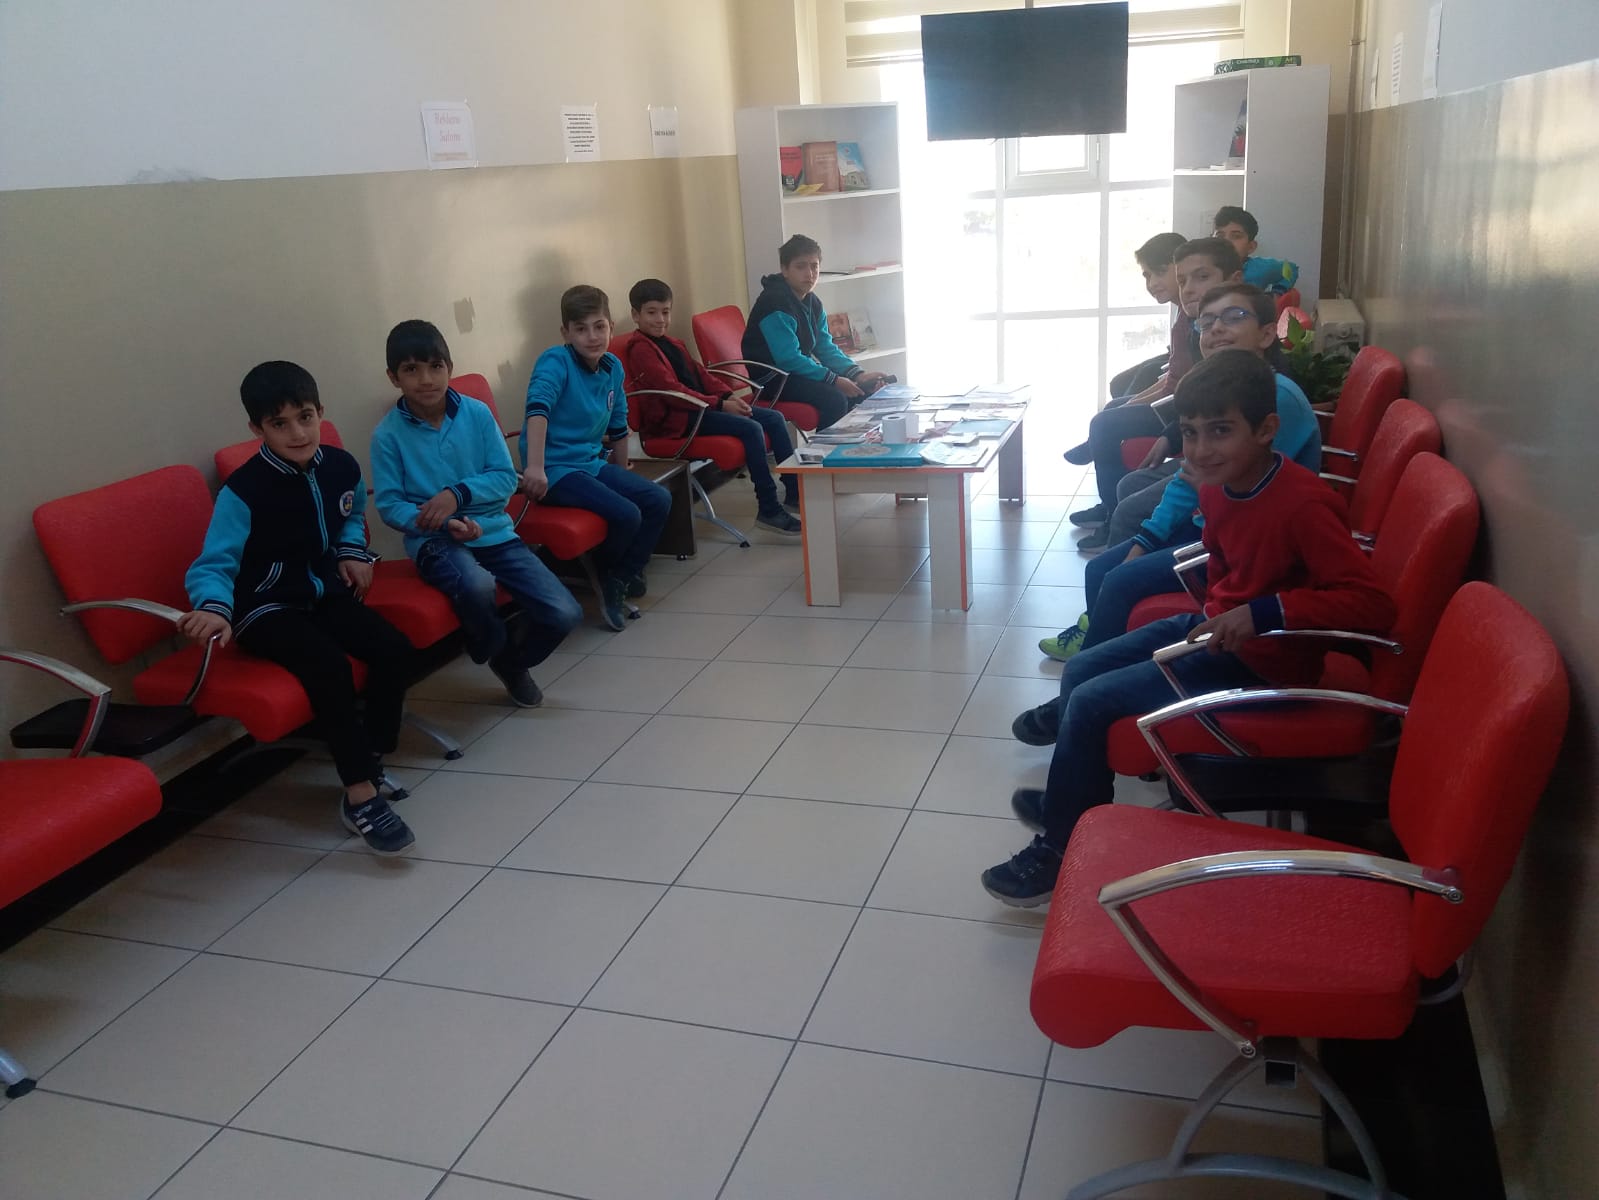 Bitlis Mesleki Eğitim Merkezince yapılan Kalfalık- Ustalık sınavında, Bitlis Feyzullah Ensari İmam Hatip Ortaokul ve Bitlis Toki Ortaokul öğrencileri, Ustalık sınavına giren usta adayı tarafından tıraş edildi.
